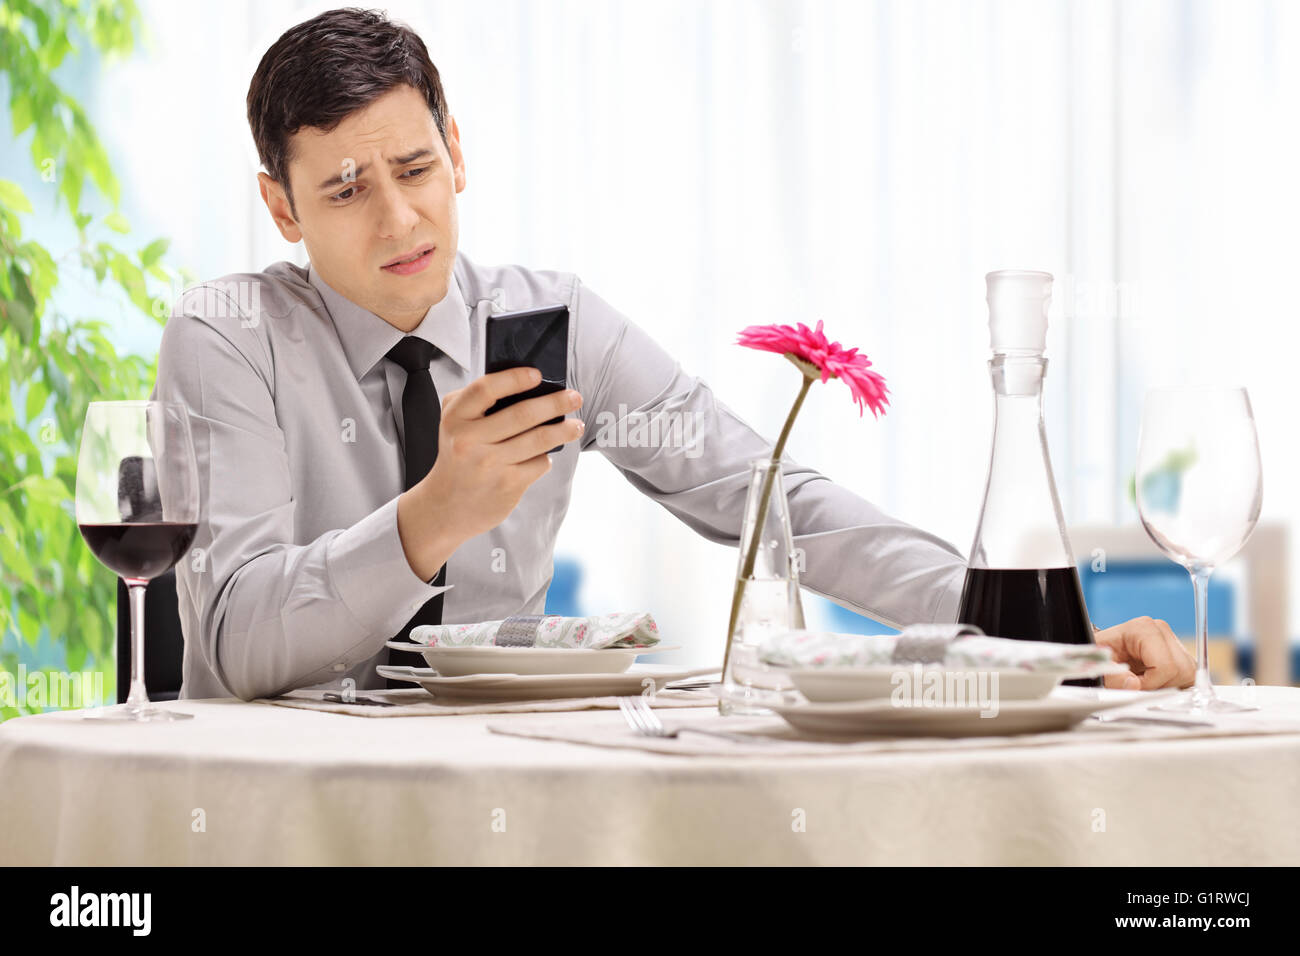 Enttäuscht junger Mann sitzt an einem Tisch im Restaurant und lesen eine SMS-Nachricht auf seinem Handy Stockfoto